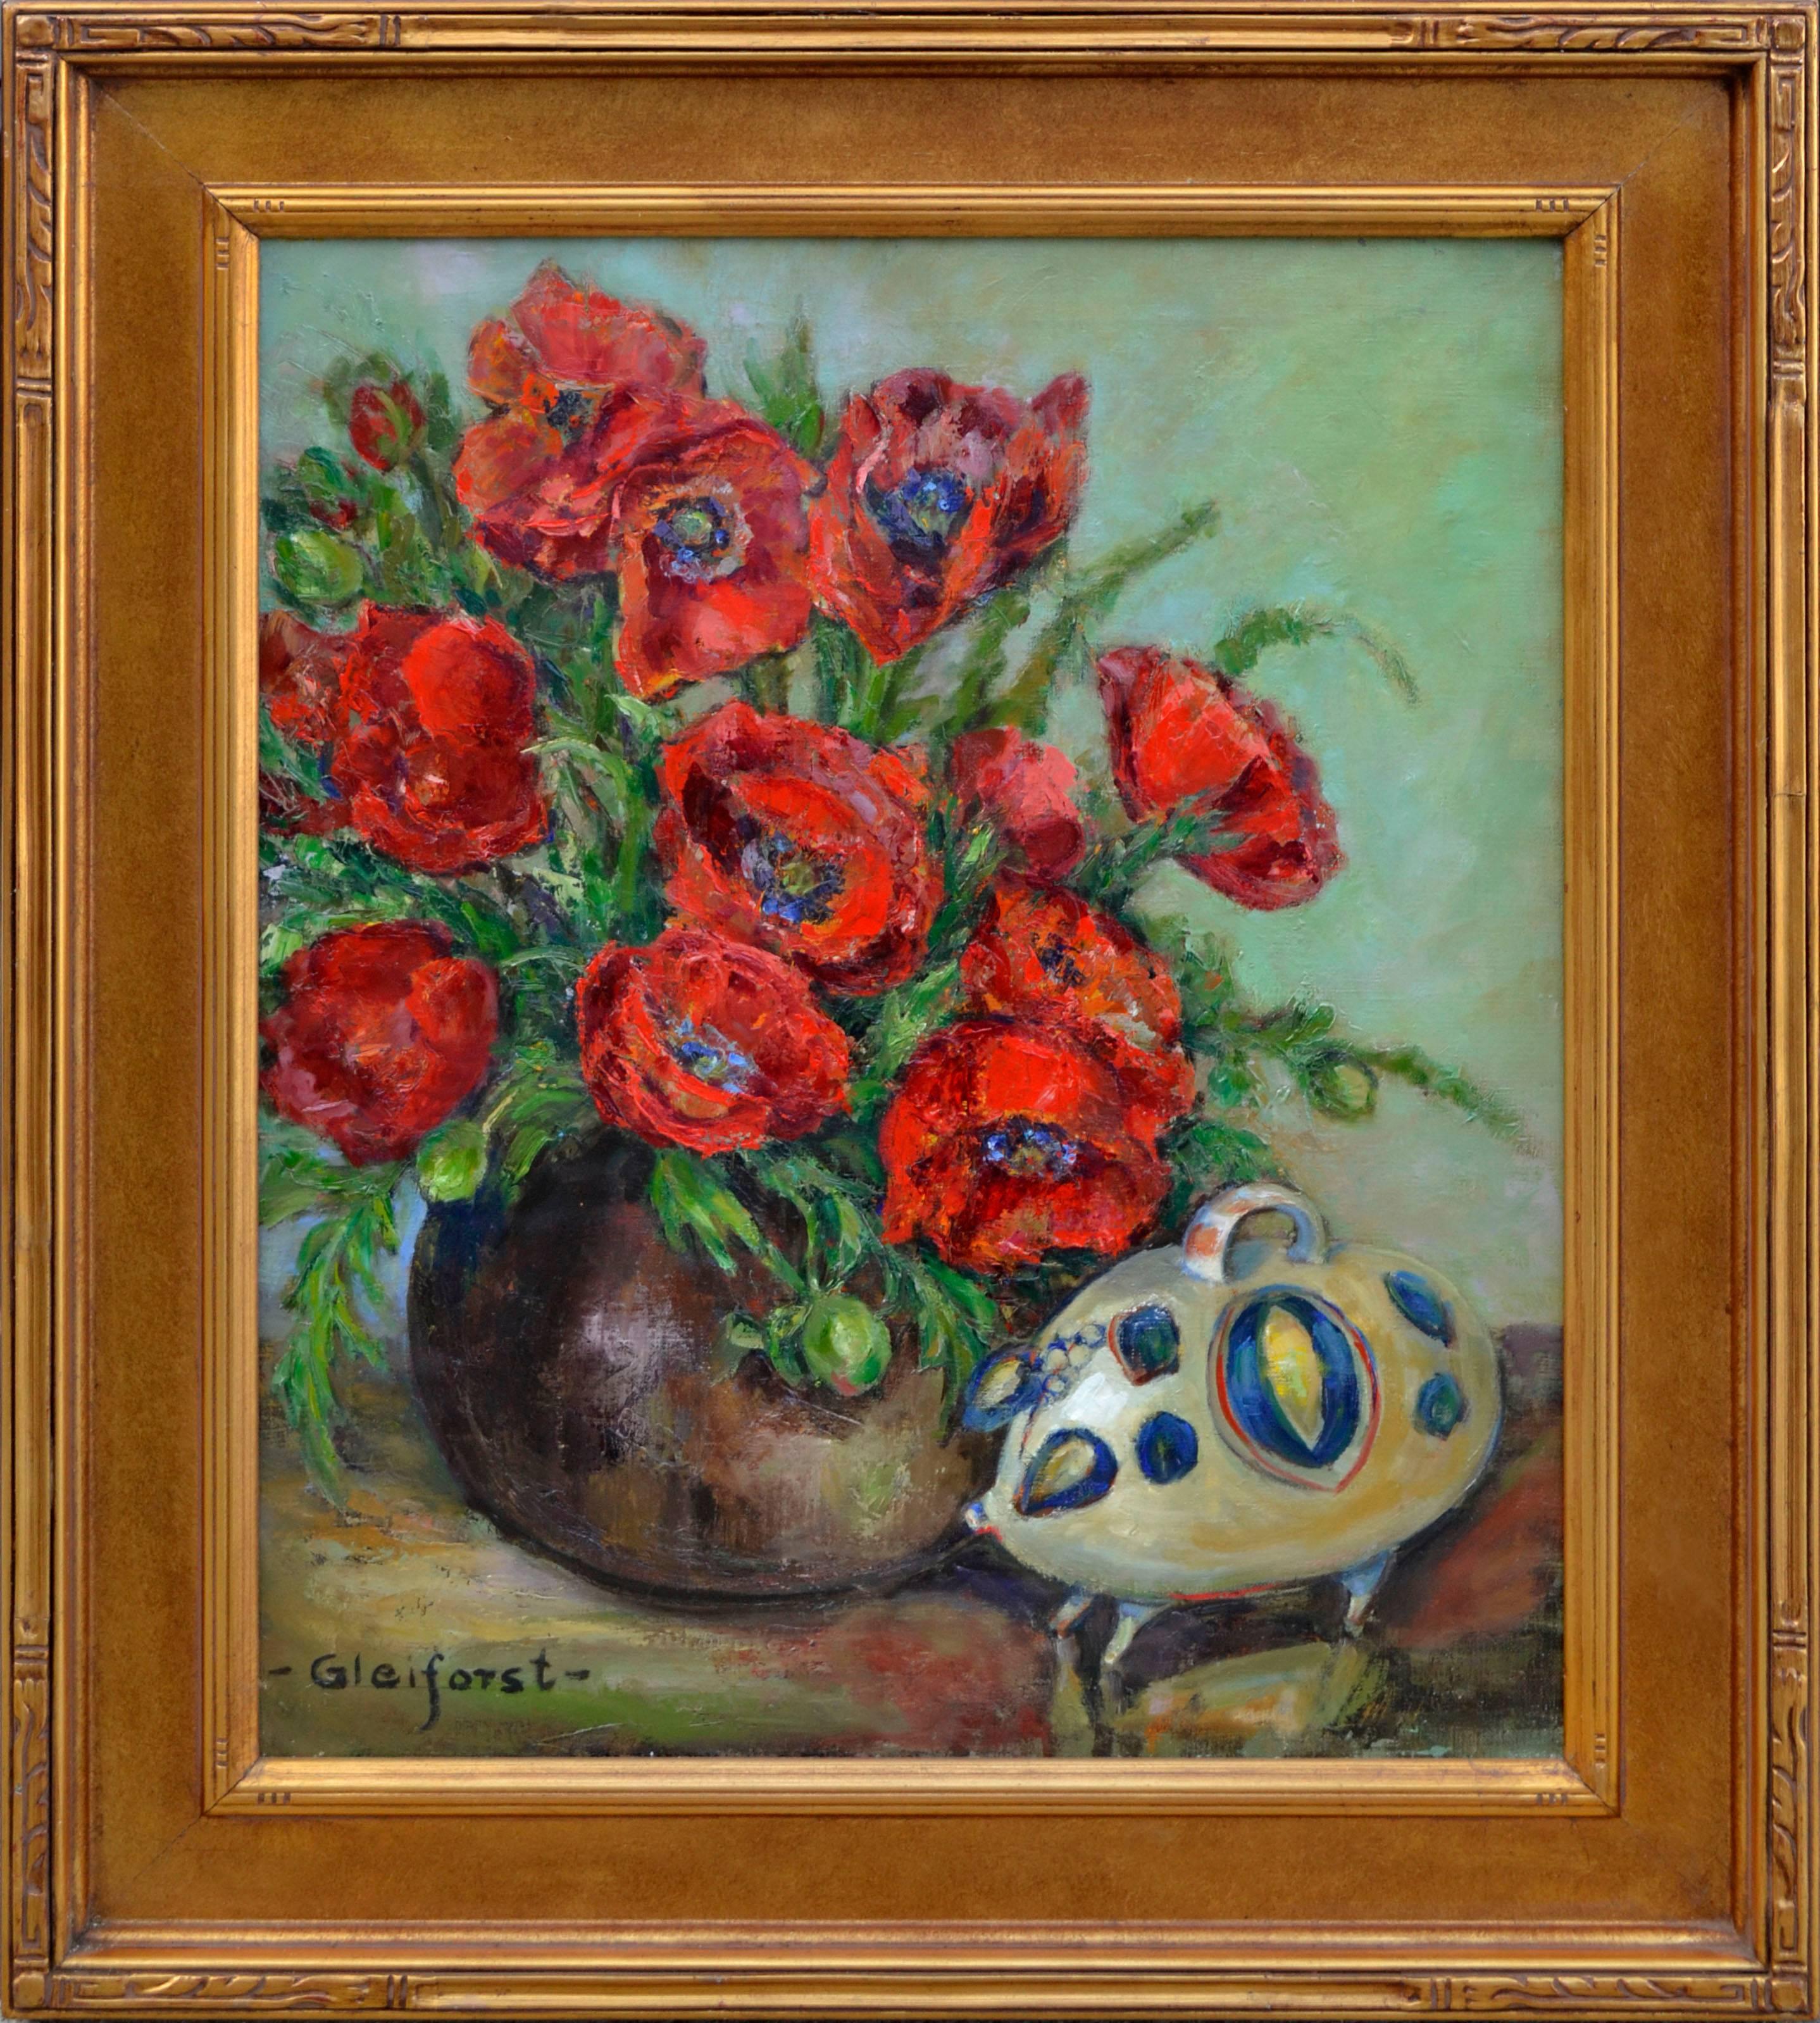 Helen Enoch Gleiforst Still-Life Painting - Red Poppies Still Life with Ceramic Pig